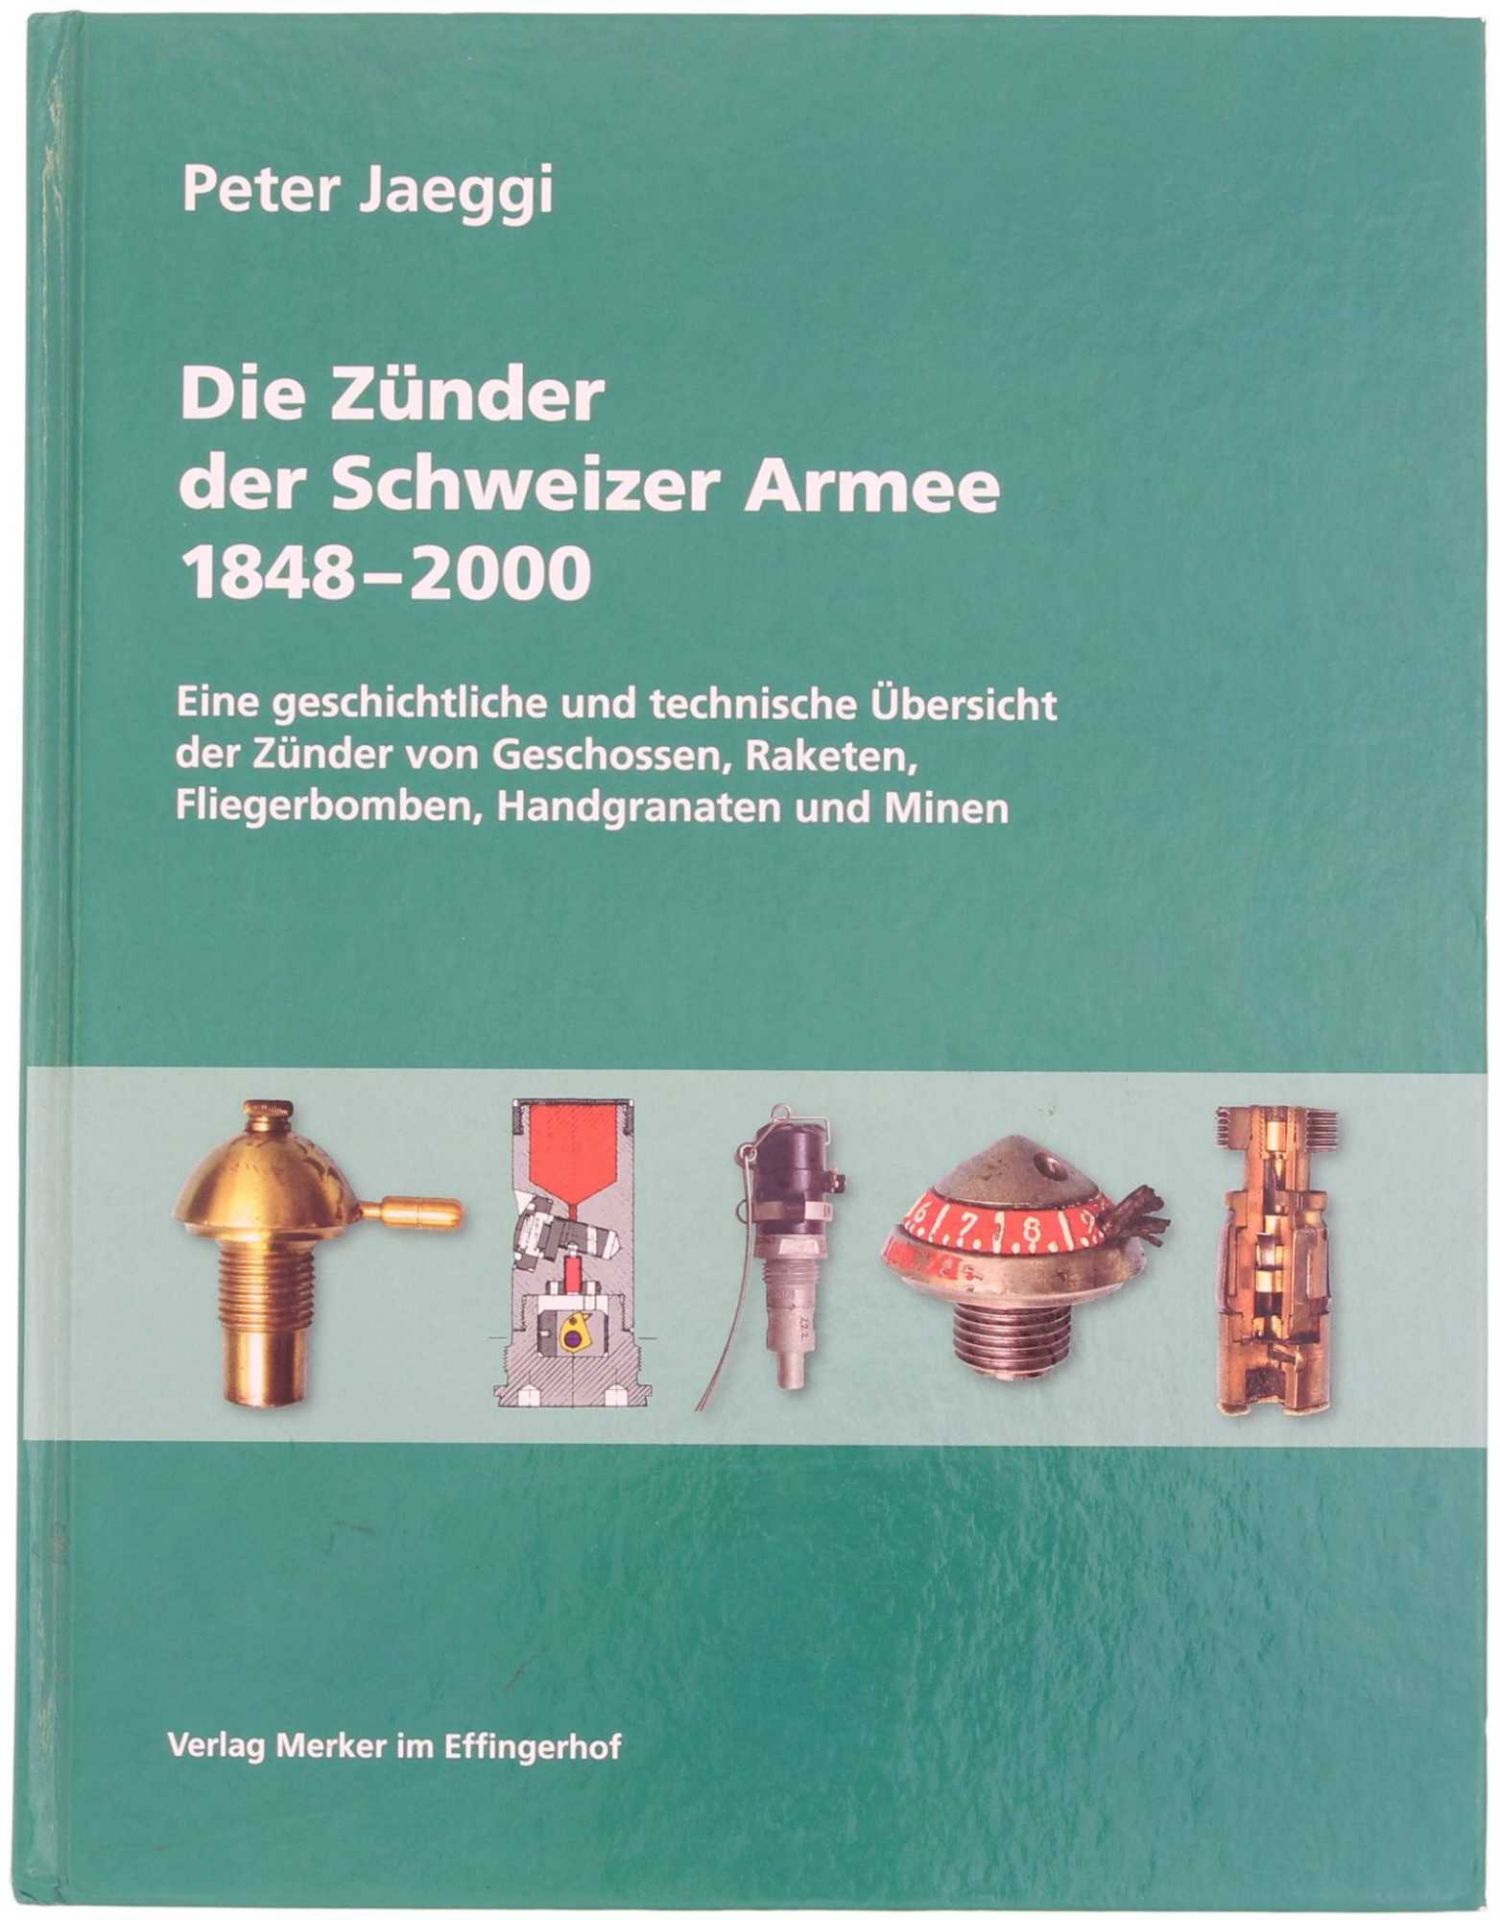 Die Zünder der Schweizer Armee 1848-2000 Autor Peter Jäggi 2006. Eine geschichtliche und